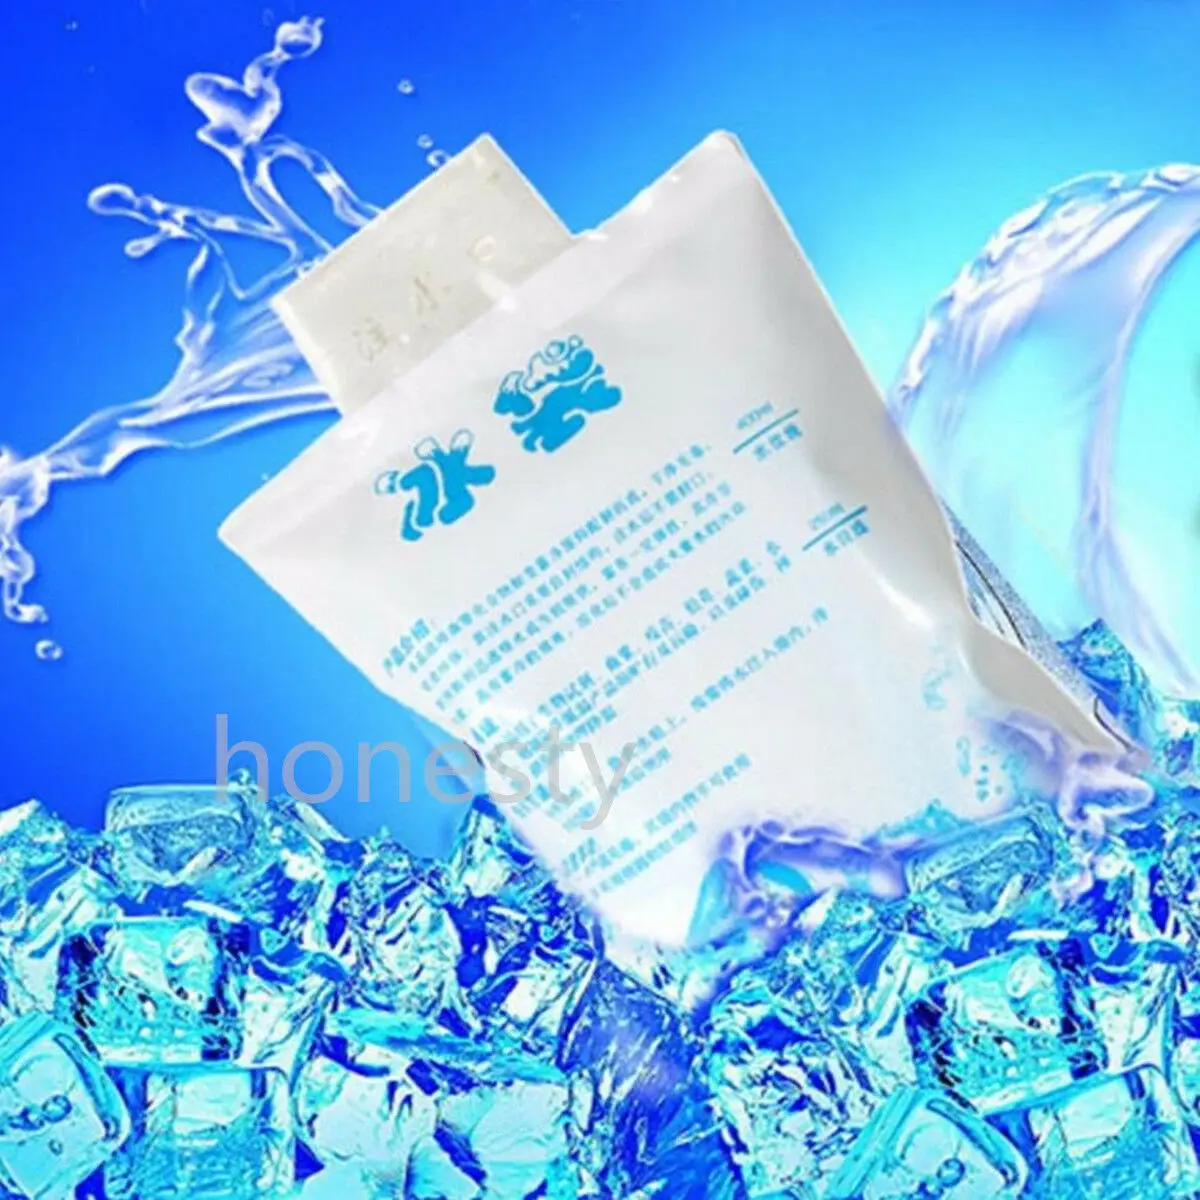 1X Многоразовая прохладная сумка для упаковки льда Первая помощь Обезболивание Терапия Хранение продуктов